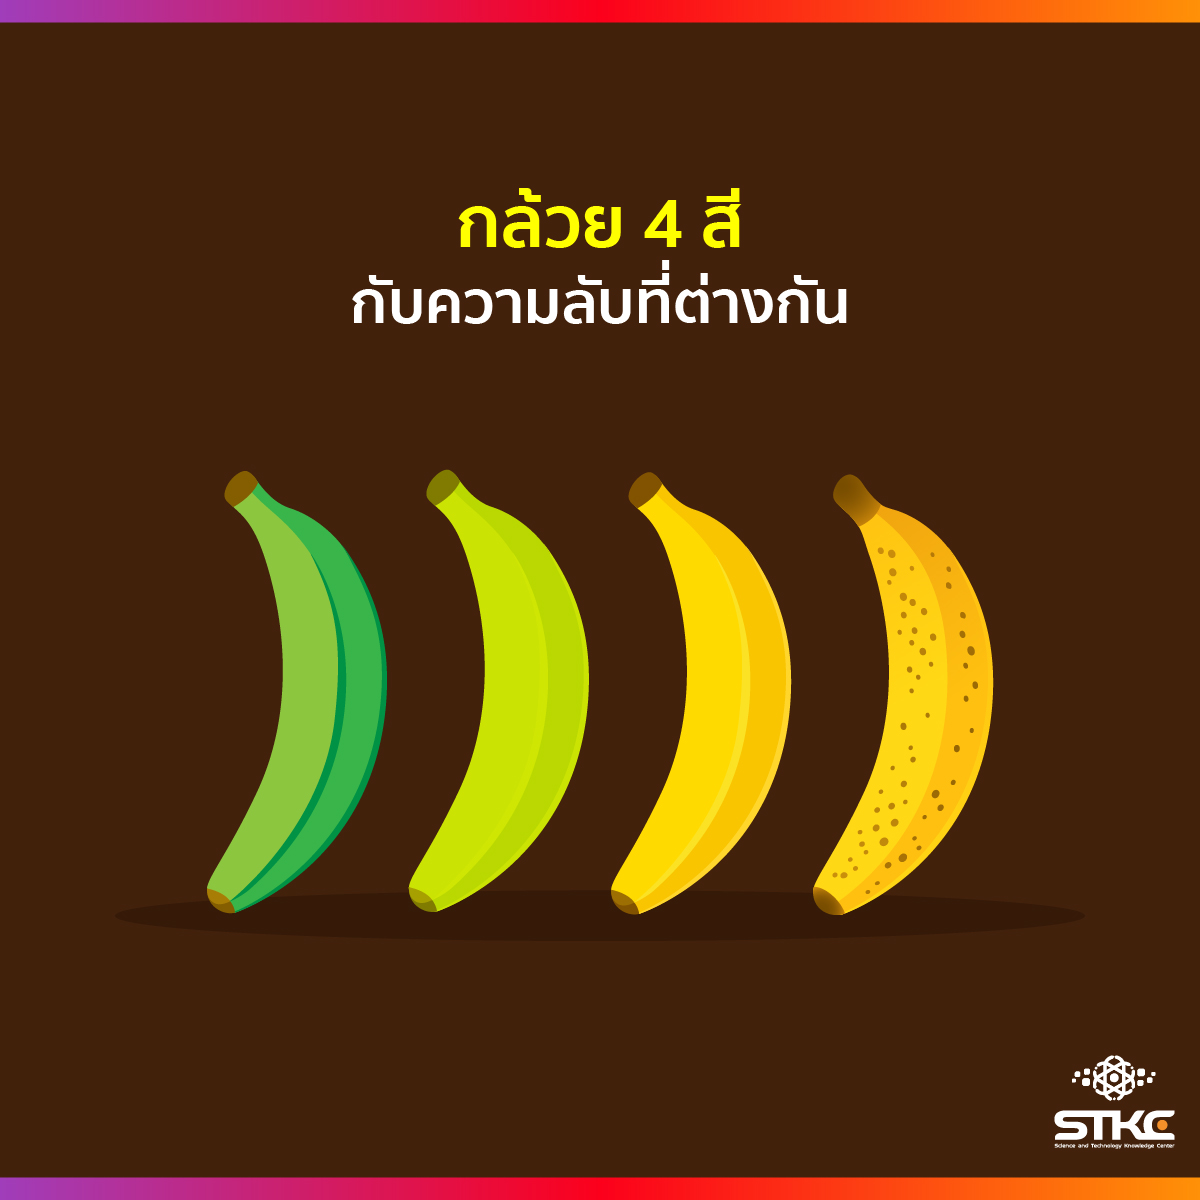 กล้วย 4 สีกับความลับที่ต่างกัน